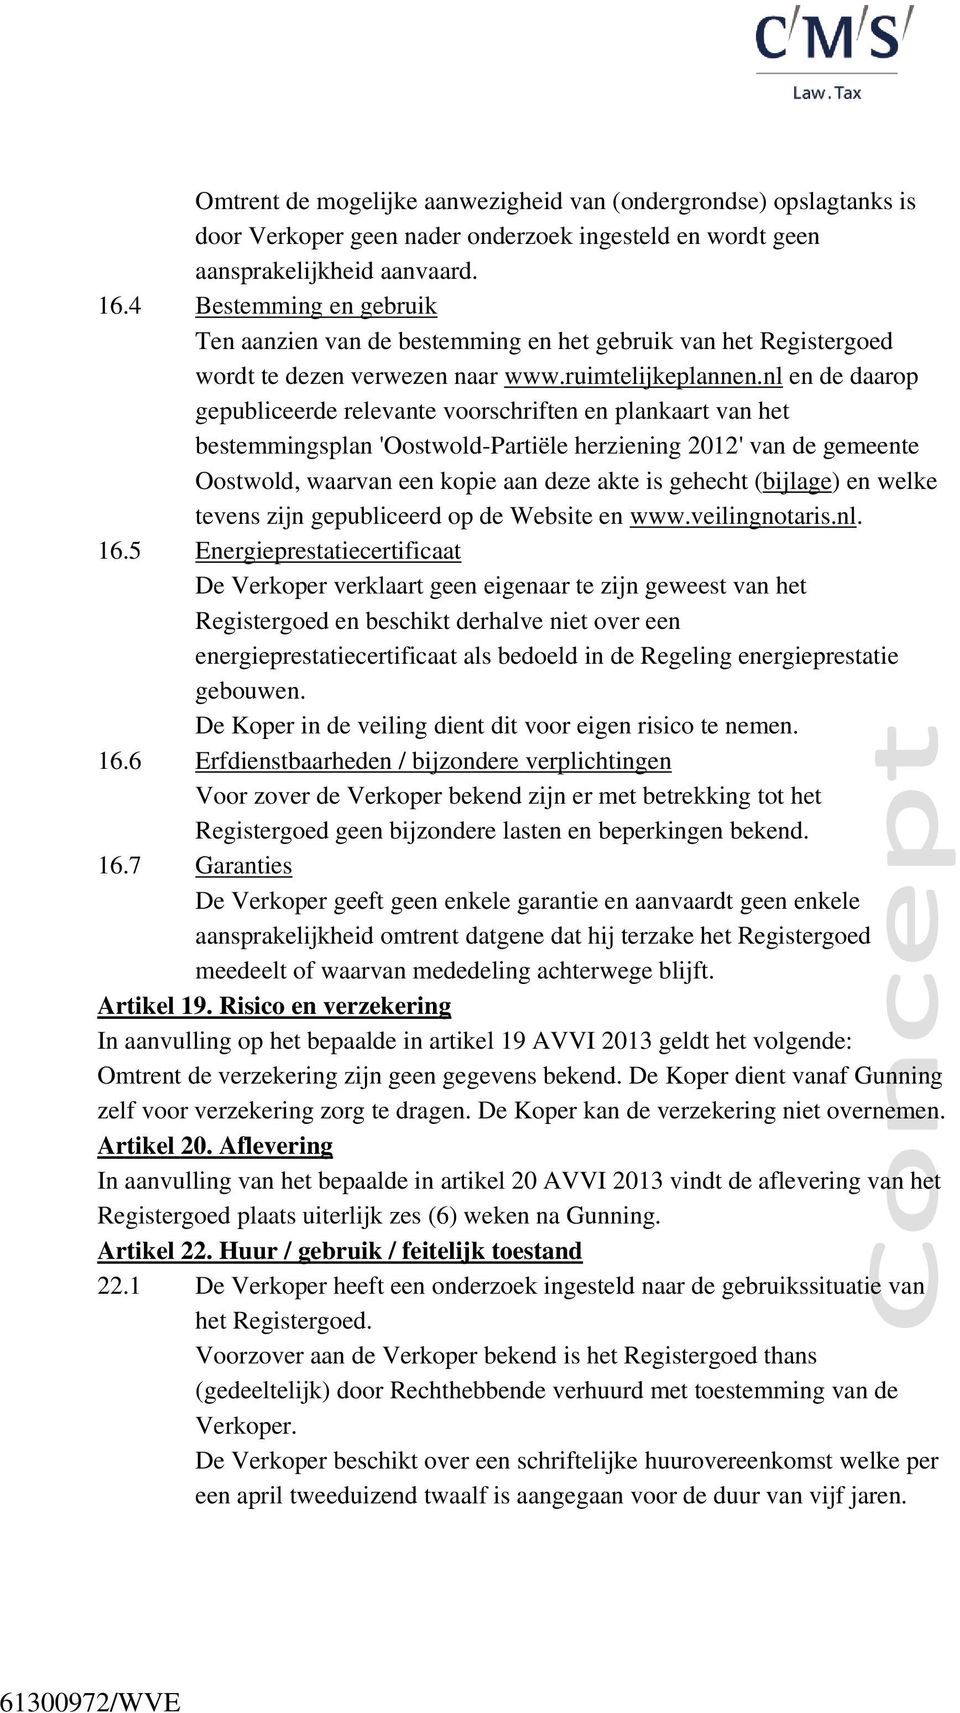 nl en de daarop gepubliceerde relevante voorschriften en plankaart van het bestemmingsplan 'Oostwold-Partiële herziening 2012' van de gemeente Oostwold, waarvan een kopie aan deze akte is gehecht